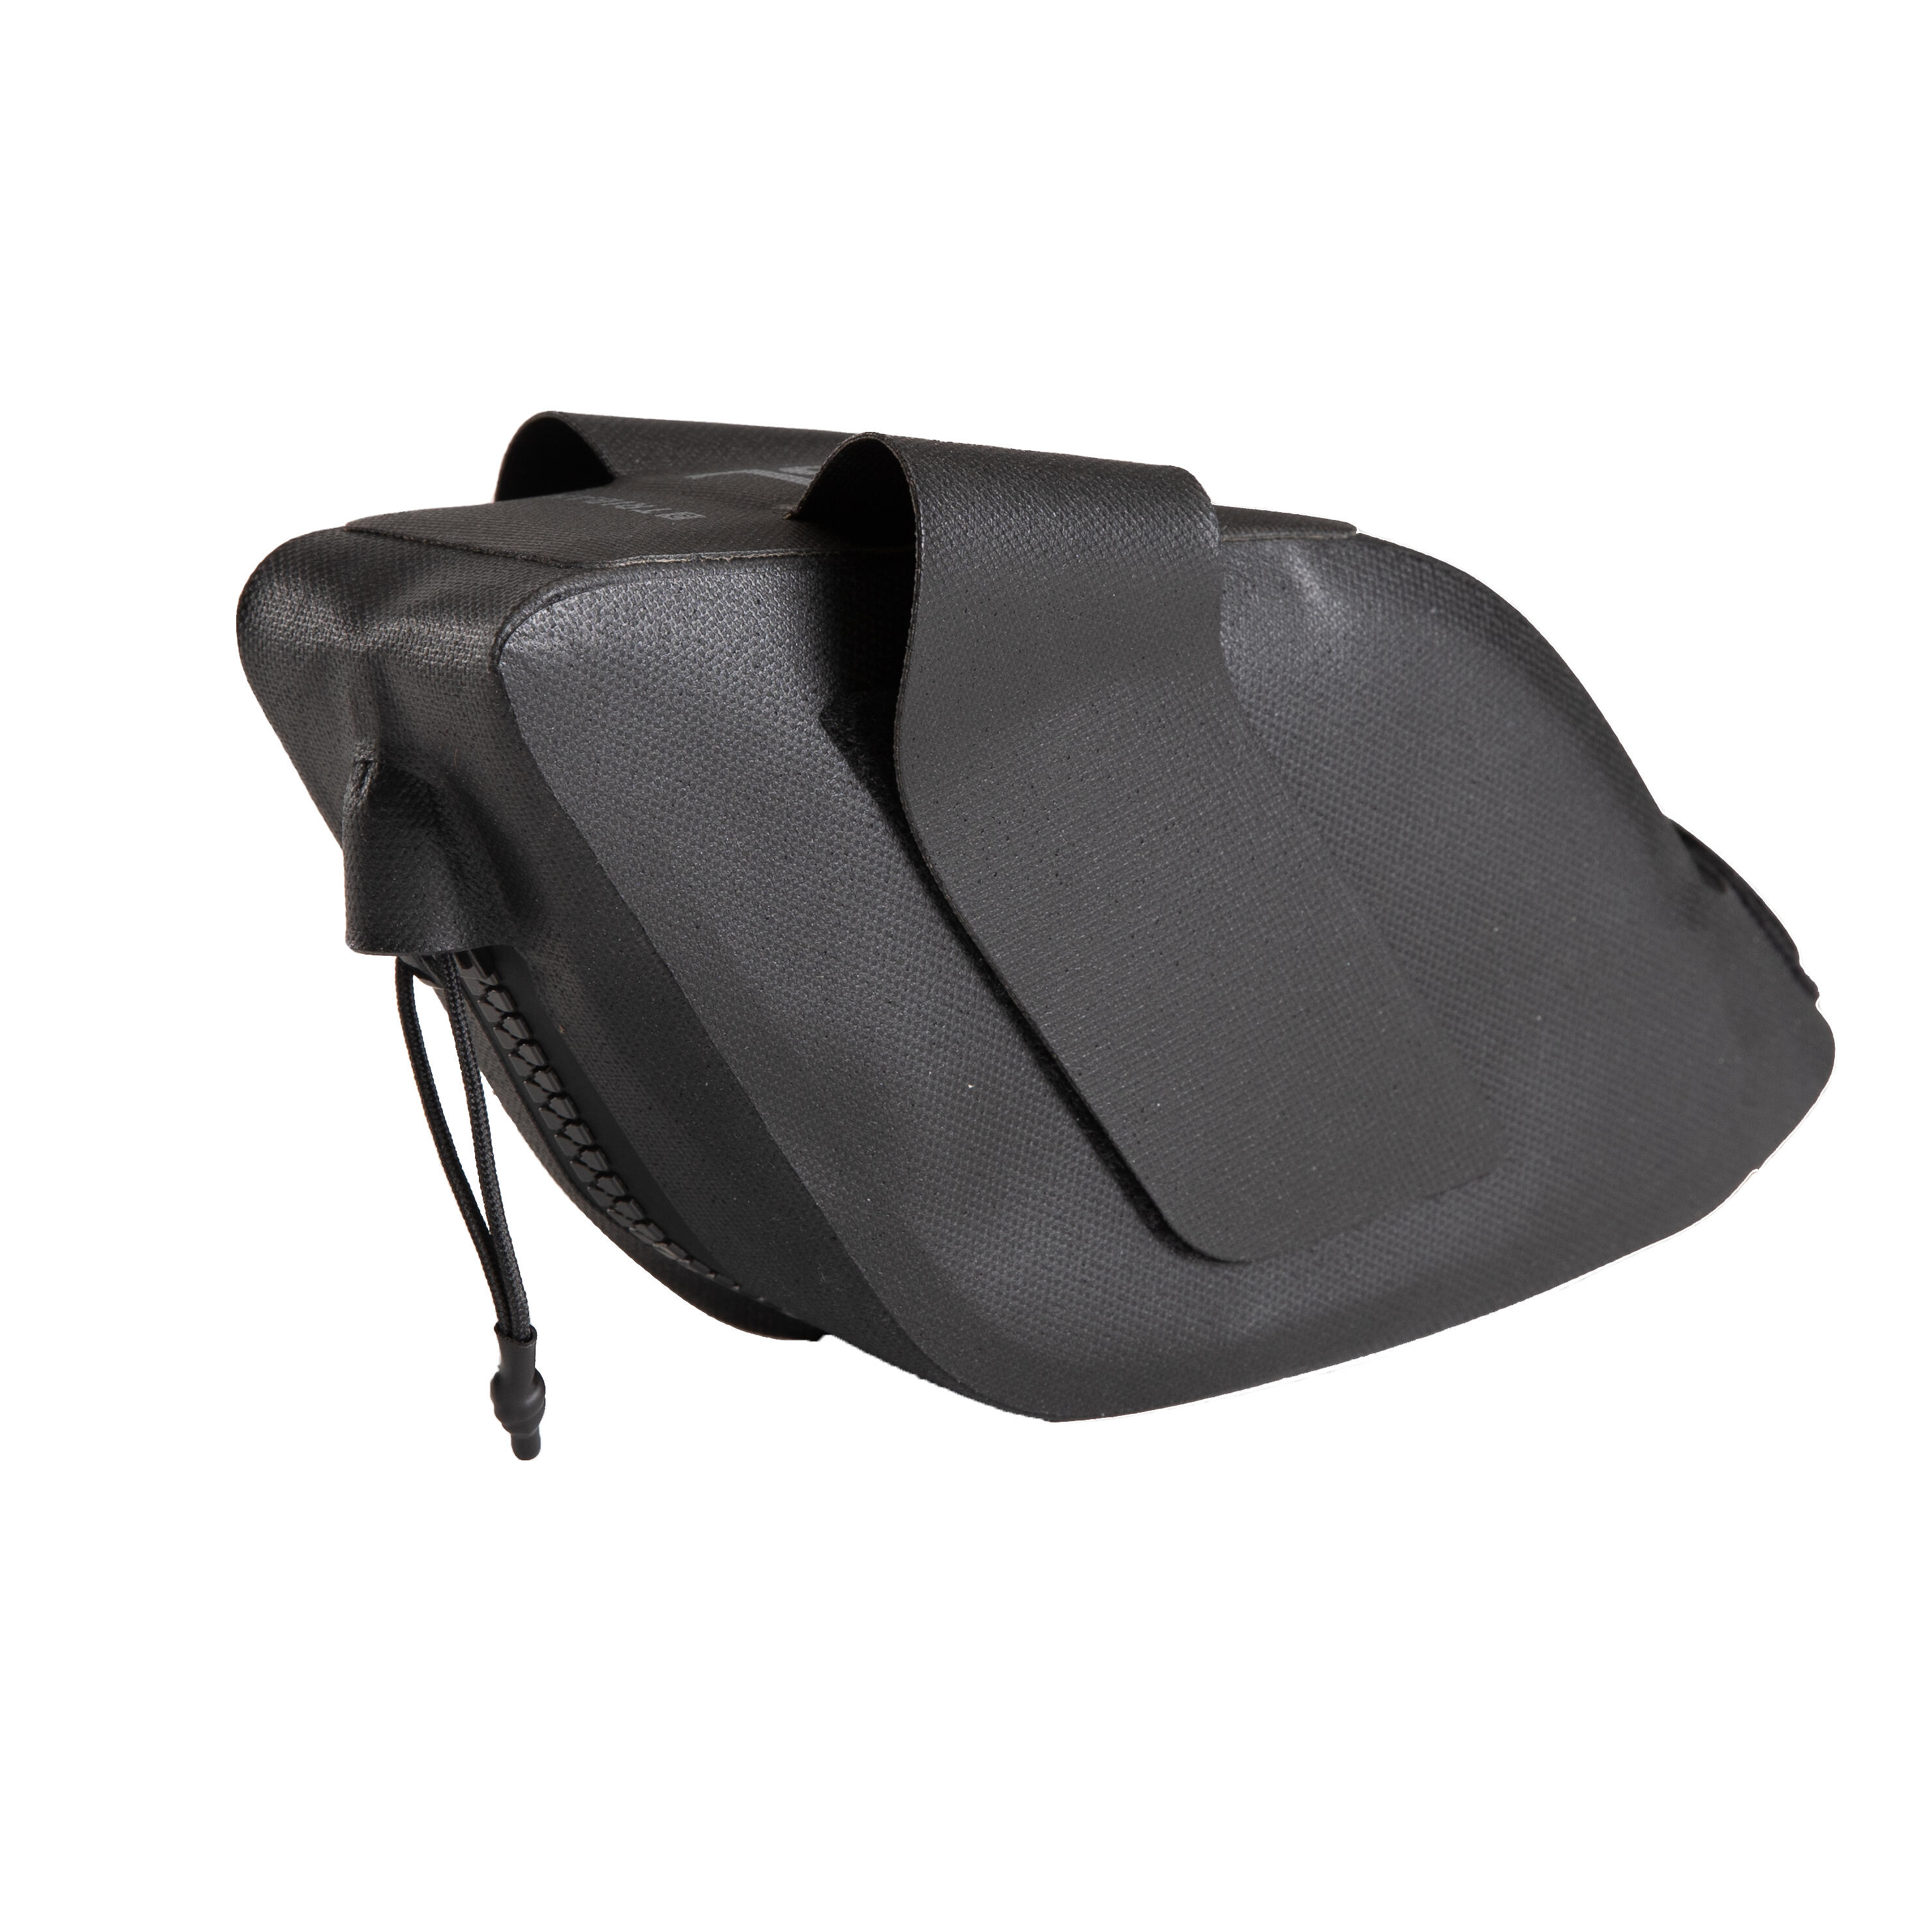 Saddle bag 0.6 L - VAN RYSEL